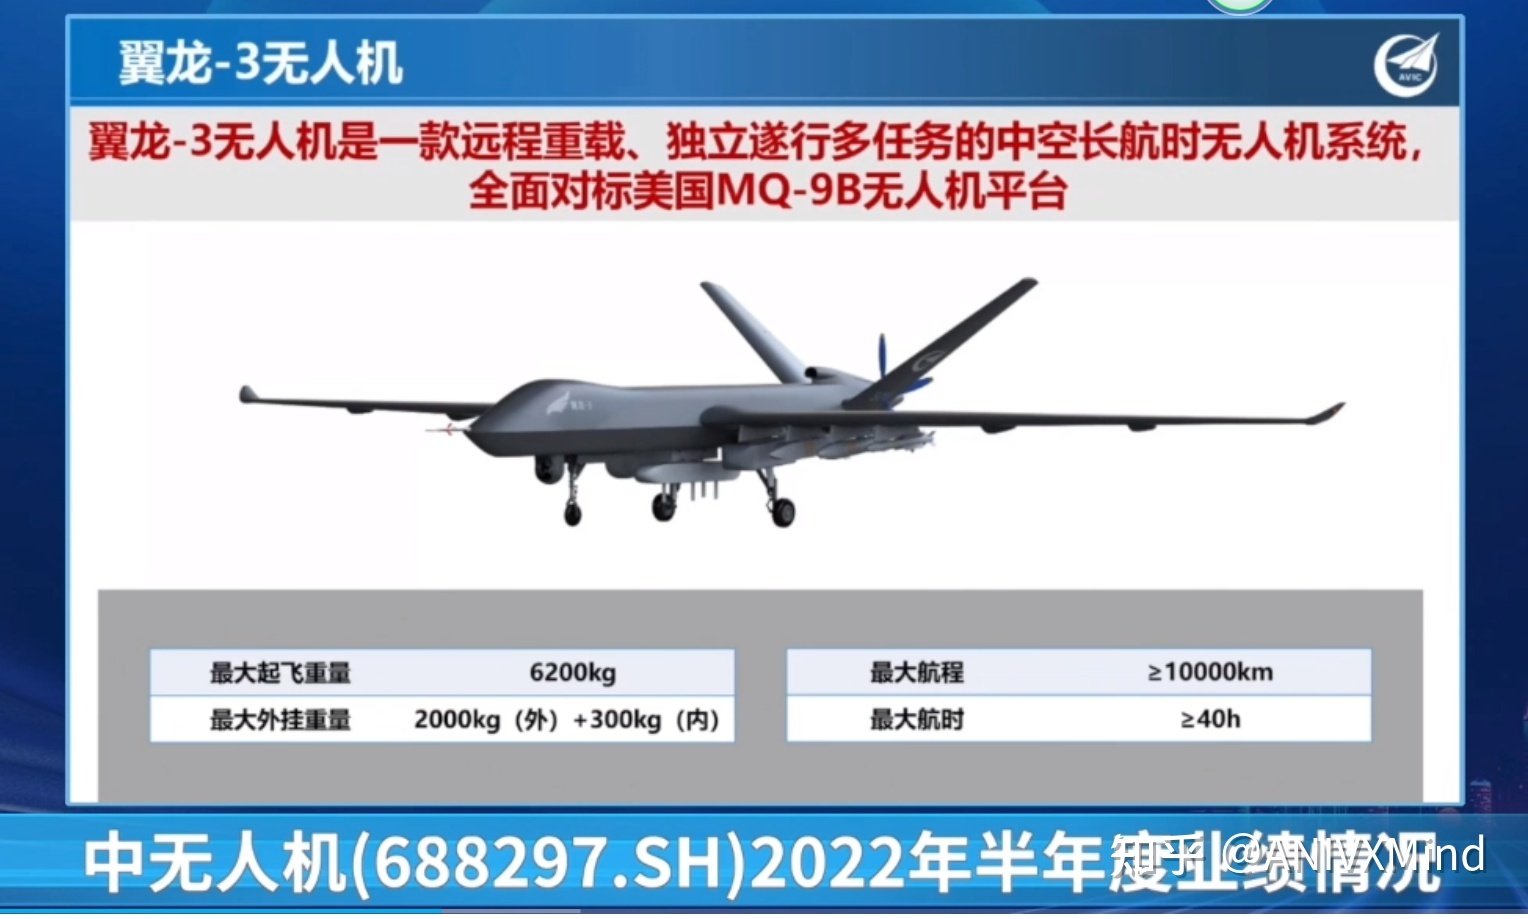 China presentó el dron de reconocimiento Wing Loong 3, competidor del MQ-9B SkyGuardian, con un alcance de 10.000 km y misiles PL-10-2